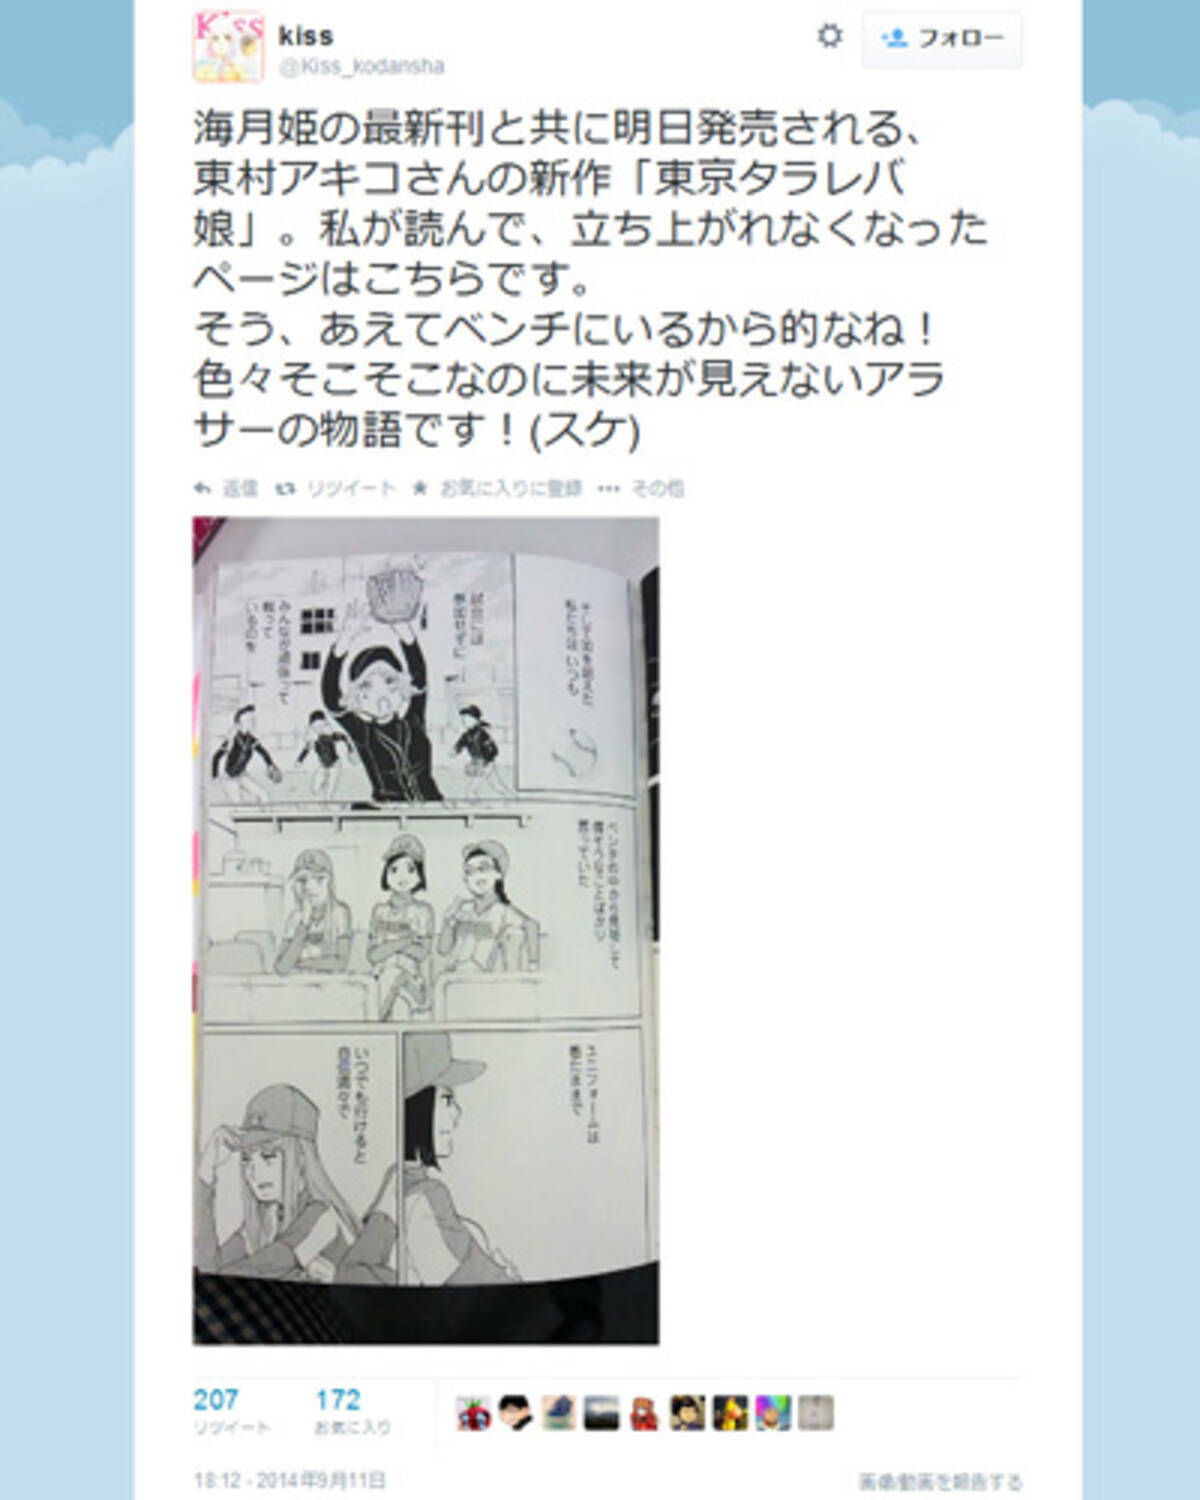 東村アキコ先生の 東京タラレバ娘 を読んでダメージを受けた報告が Twitter に多数 14年9月17日 エキサイトニュース